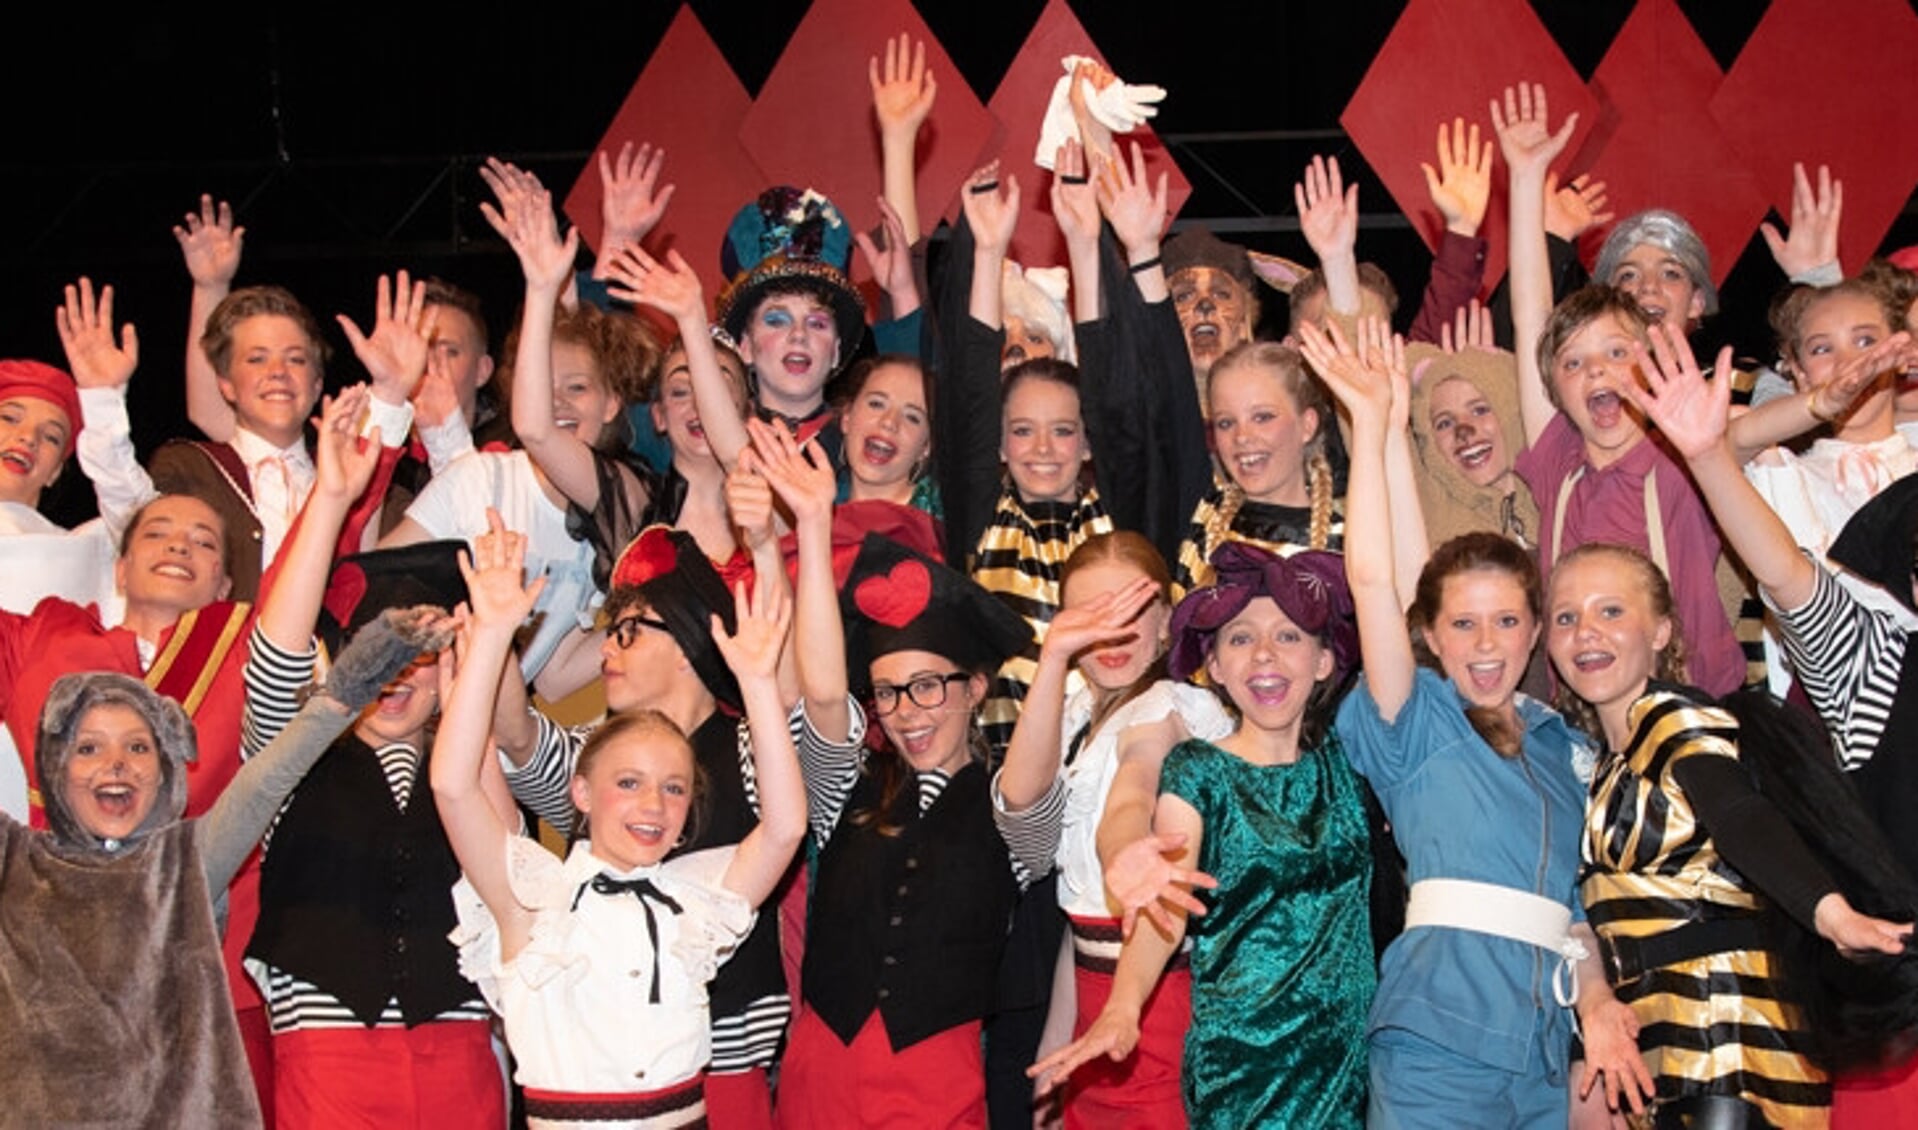 De cast van Alice in Wonderwereld van Kindertheater Kleine Kees uit Huissen. (foto: Hans Gerichhausen)